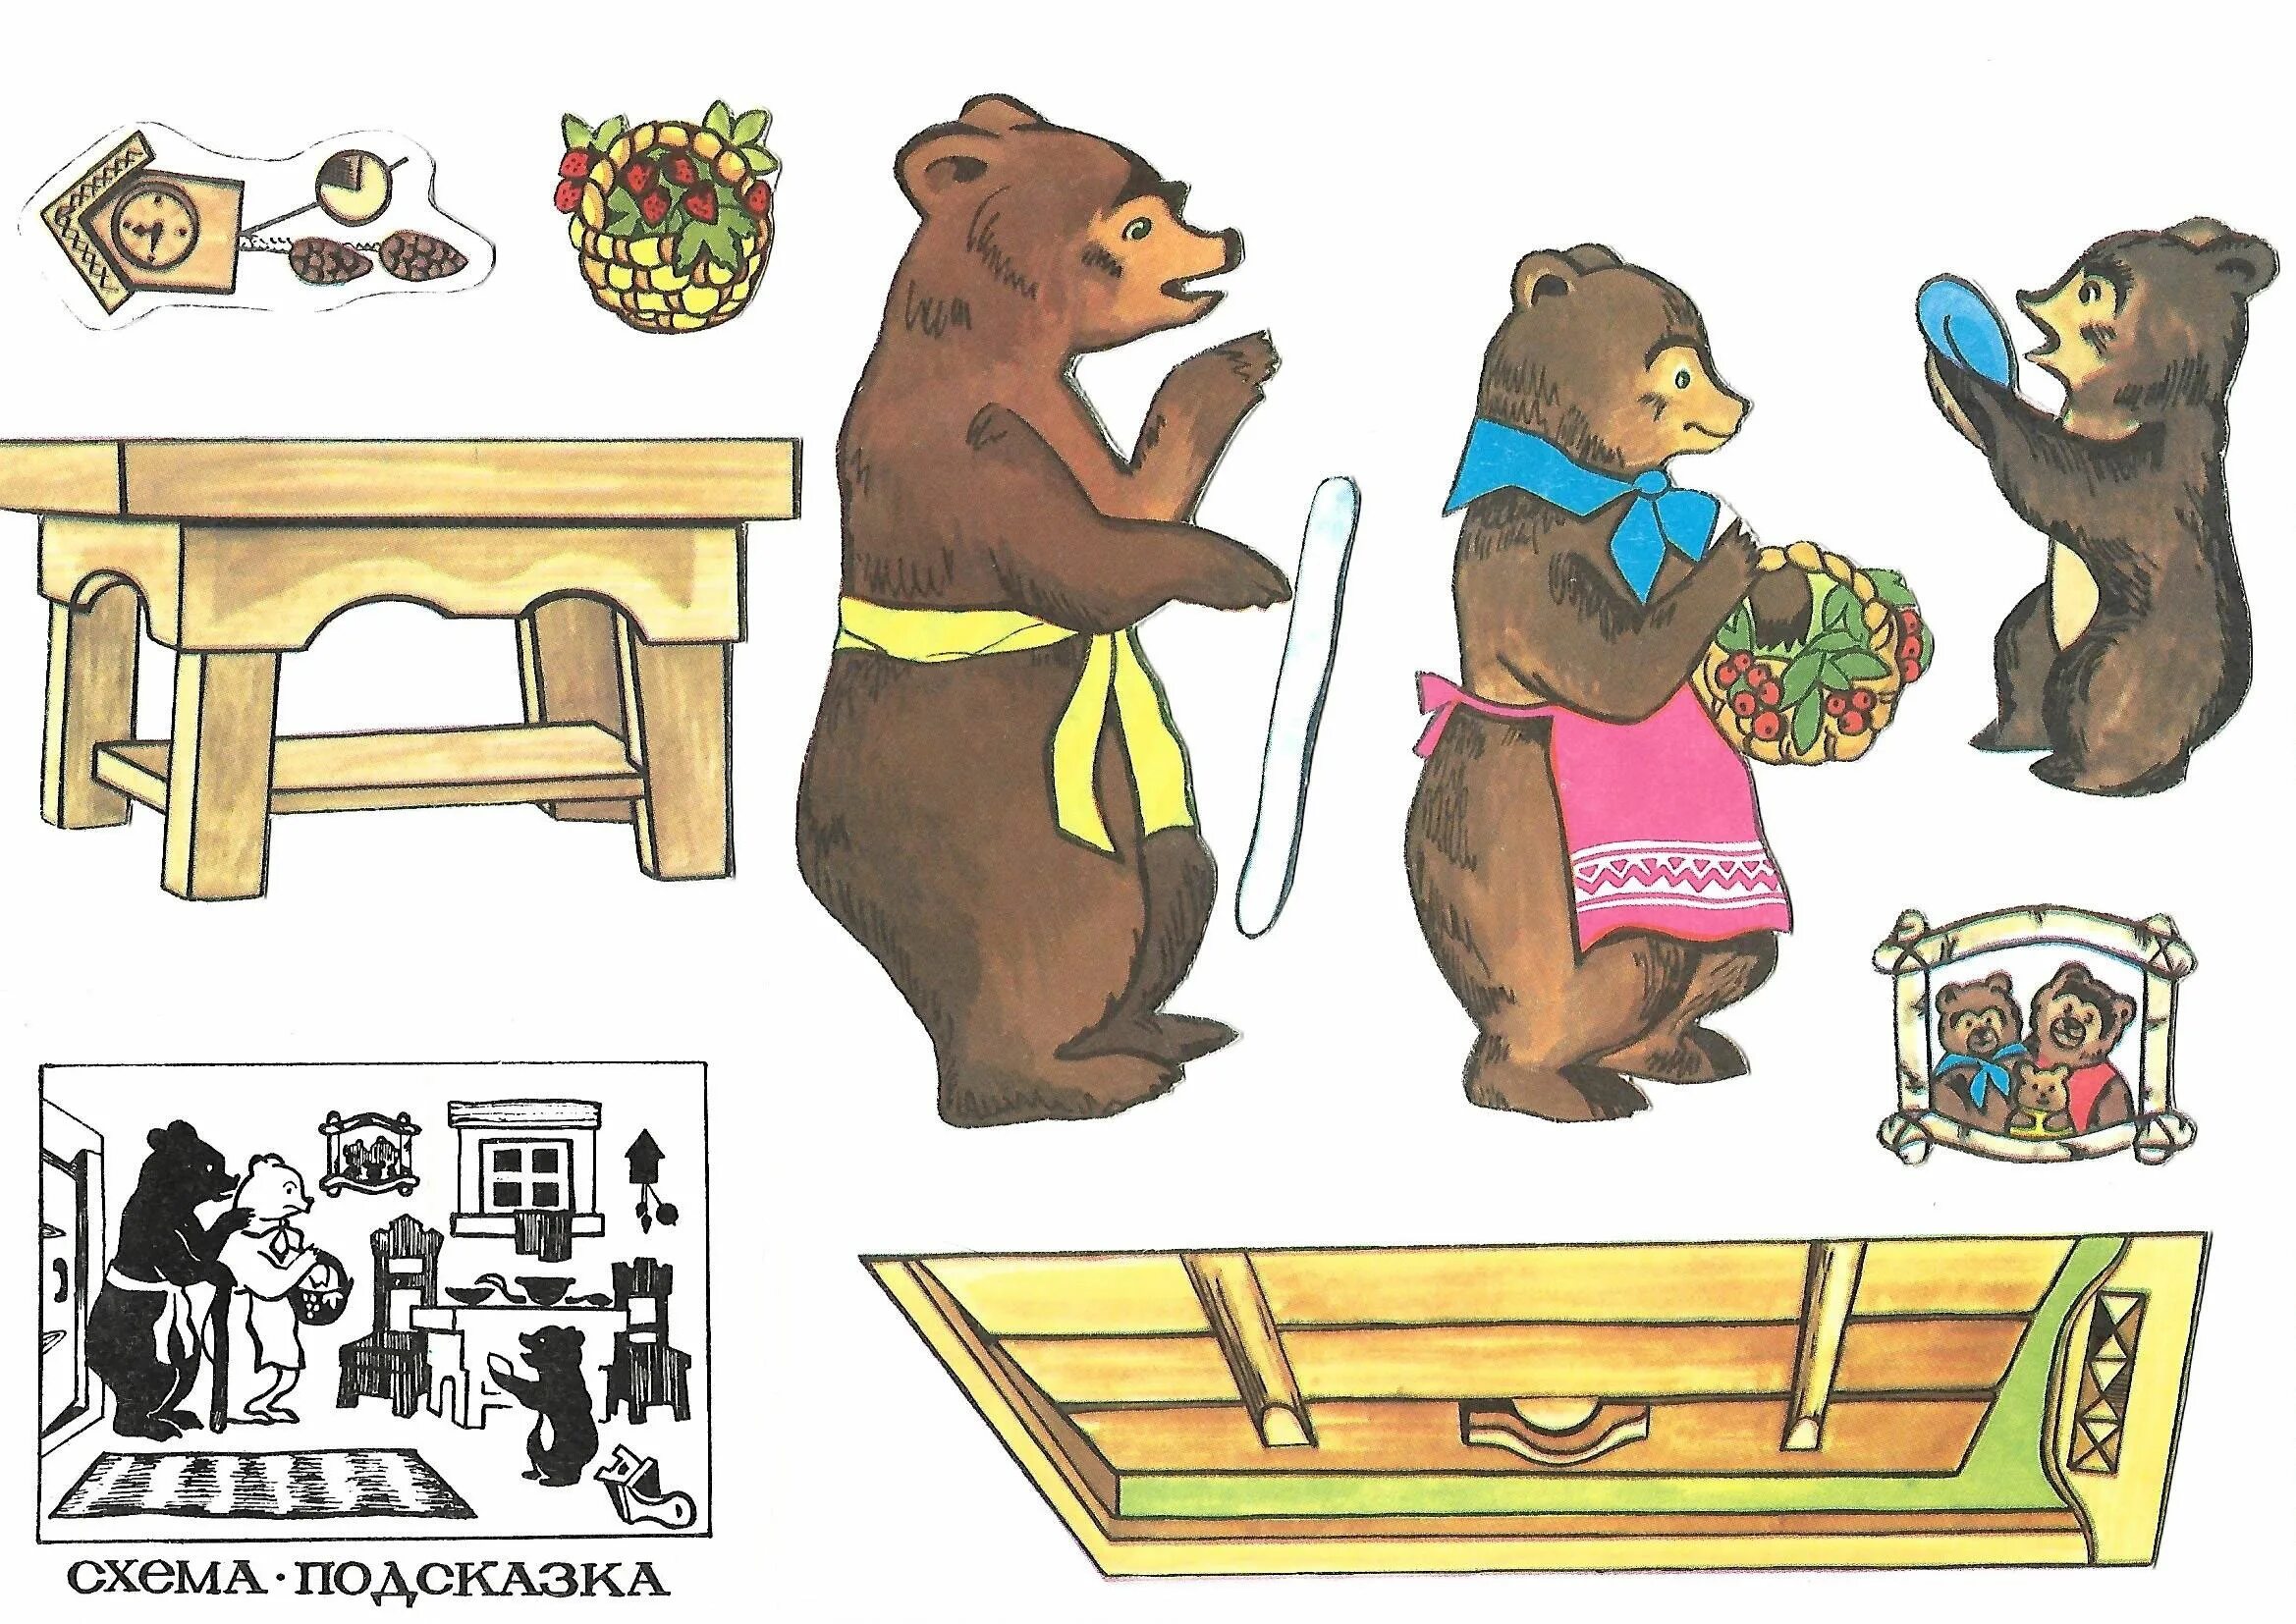 Том три медведя. Иллюстрации к сказке три медведя. Медведь из сказки три медведя. Три медведя картинки для детей. Иллюстрация к сказке 3 медведя для детей.